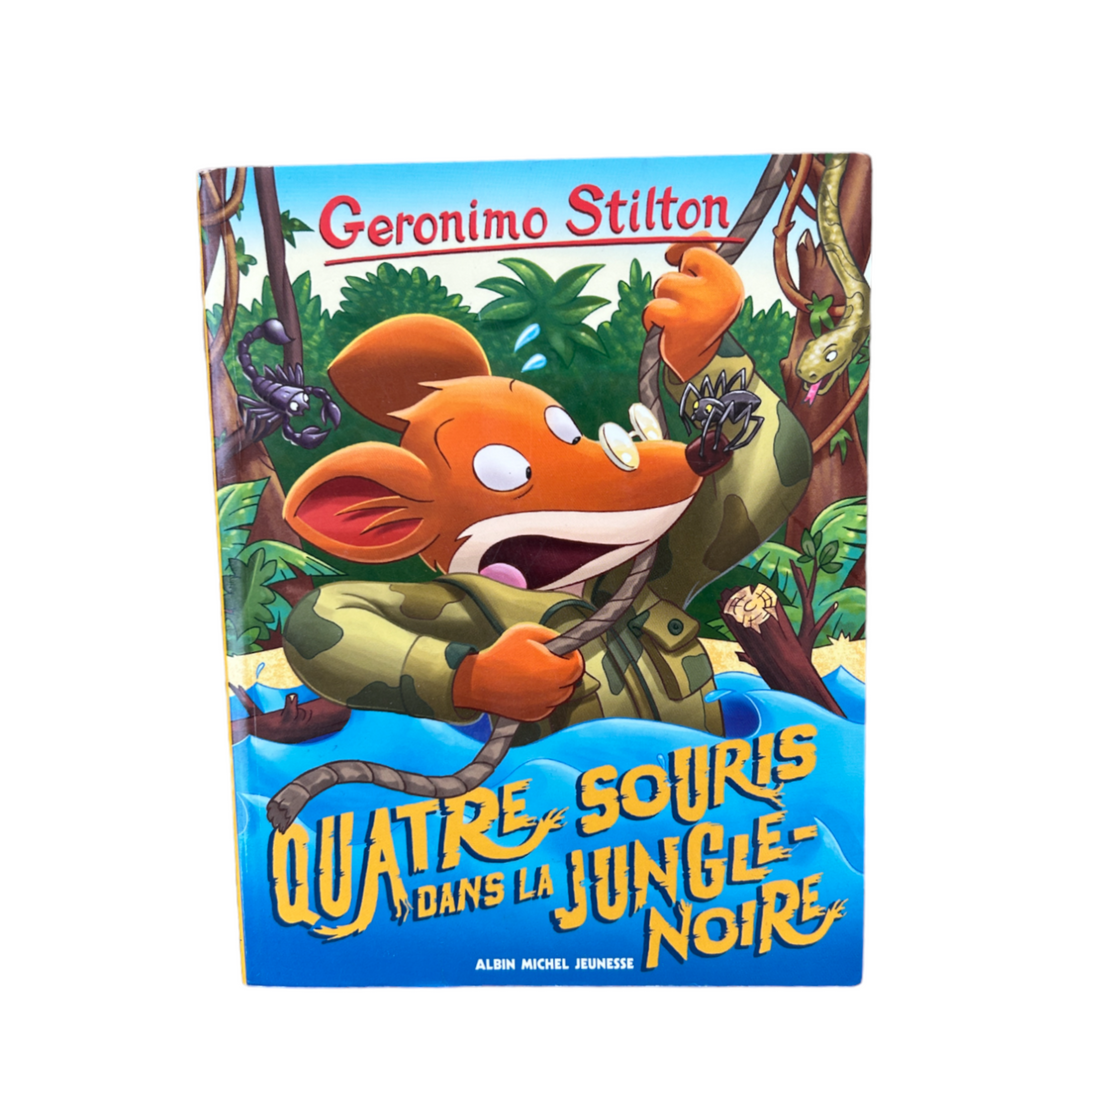 Geronimo Stilton - Quatre souris dans la jungle noire - Tome 9